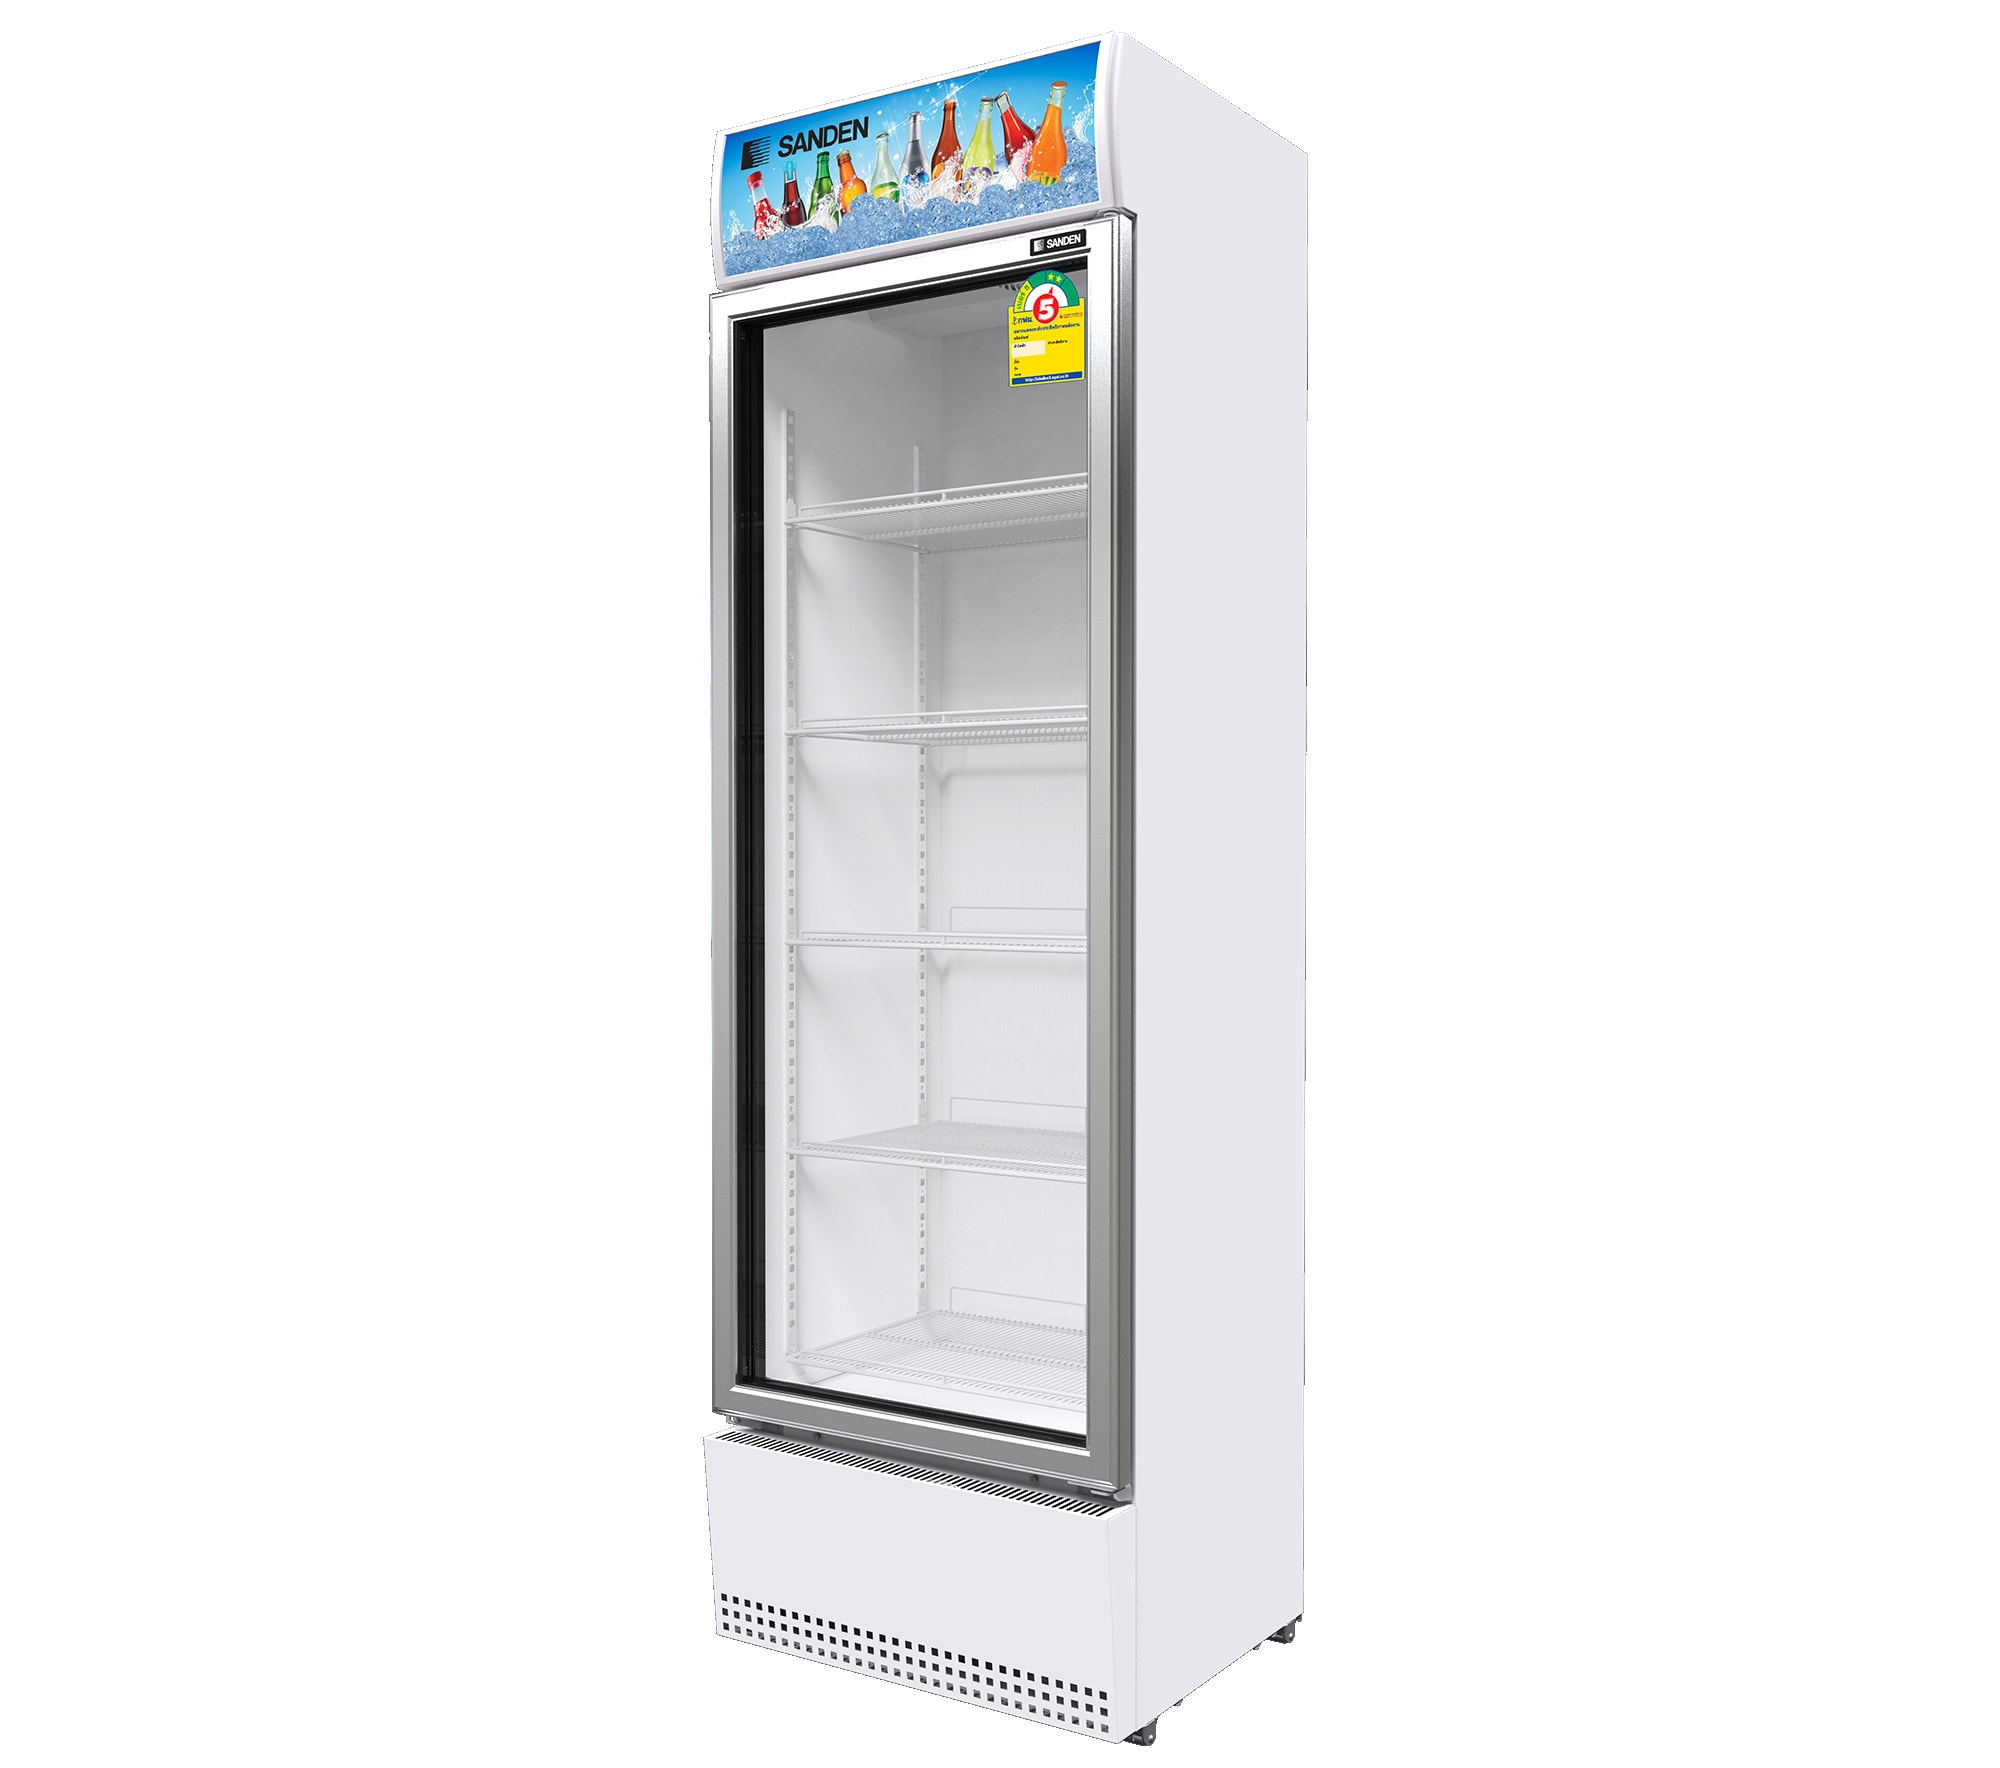 ตู้แช่เย็น 1 ประตู SANDEN รุ่น SEA-0405 ขนาด 14.1 Q